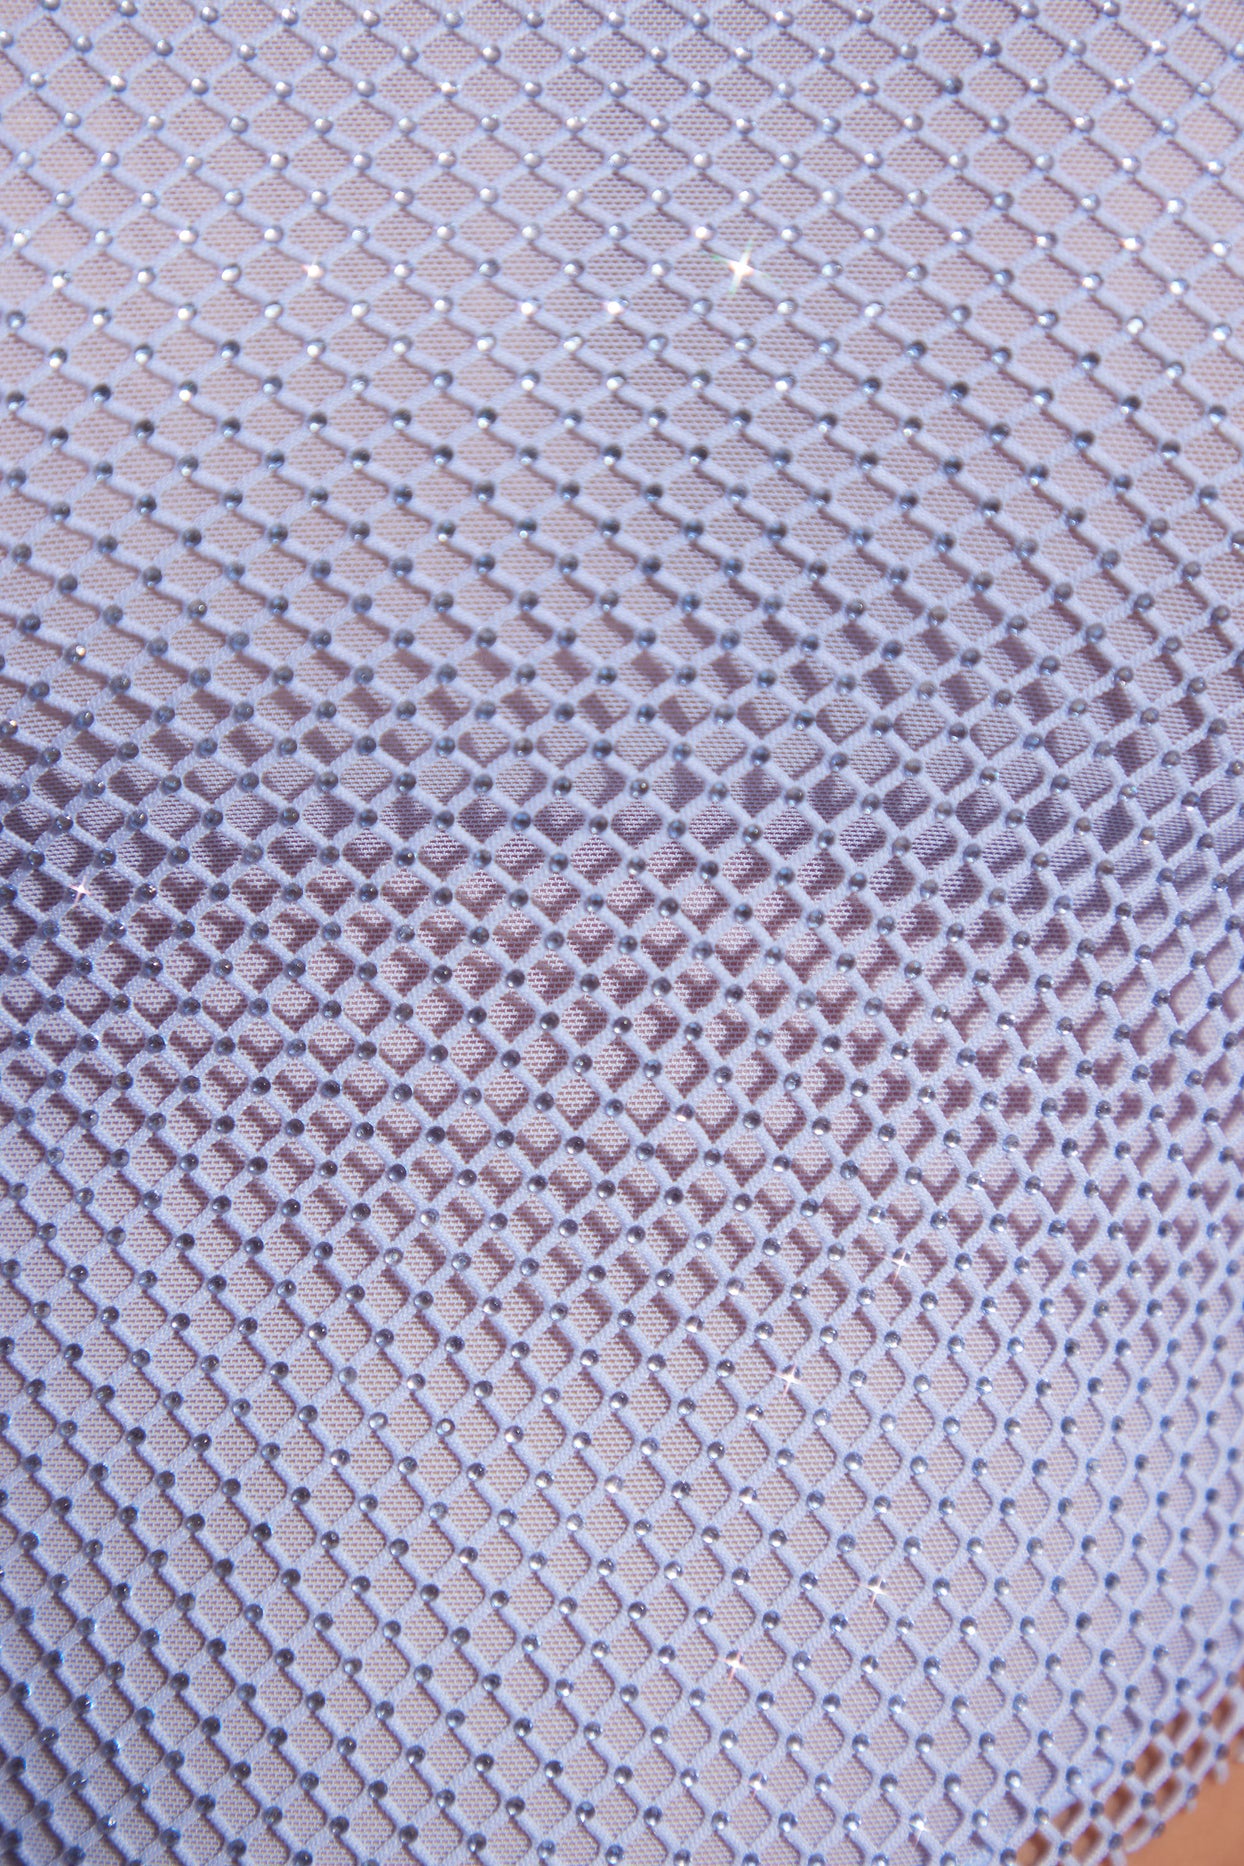 Ozdobiona chusteczką spódnica midaxi w kolorze niebieskim